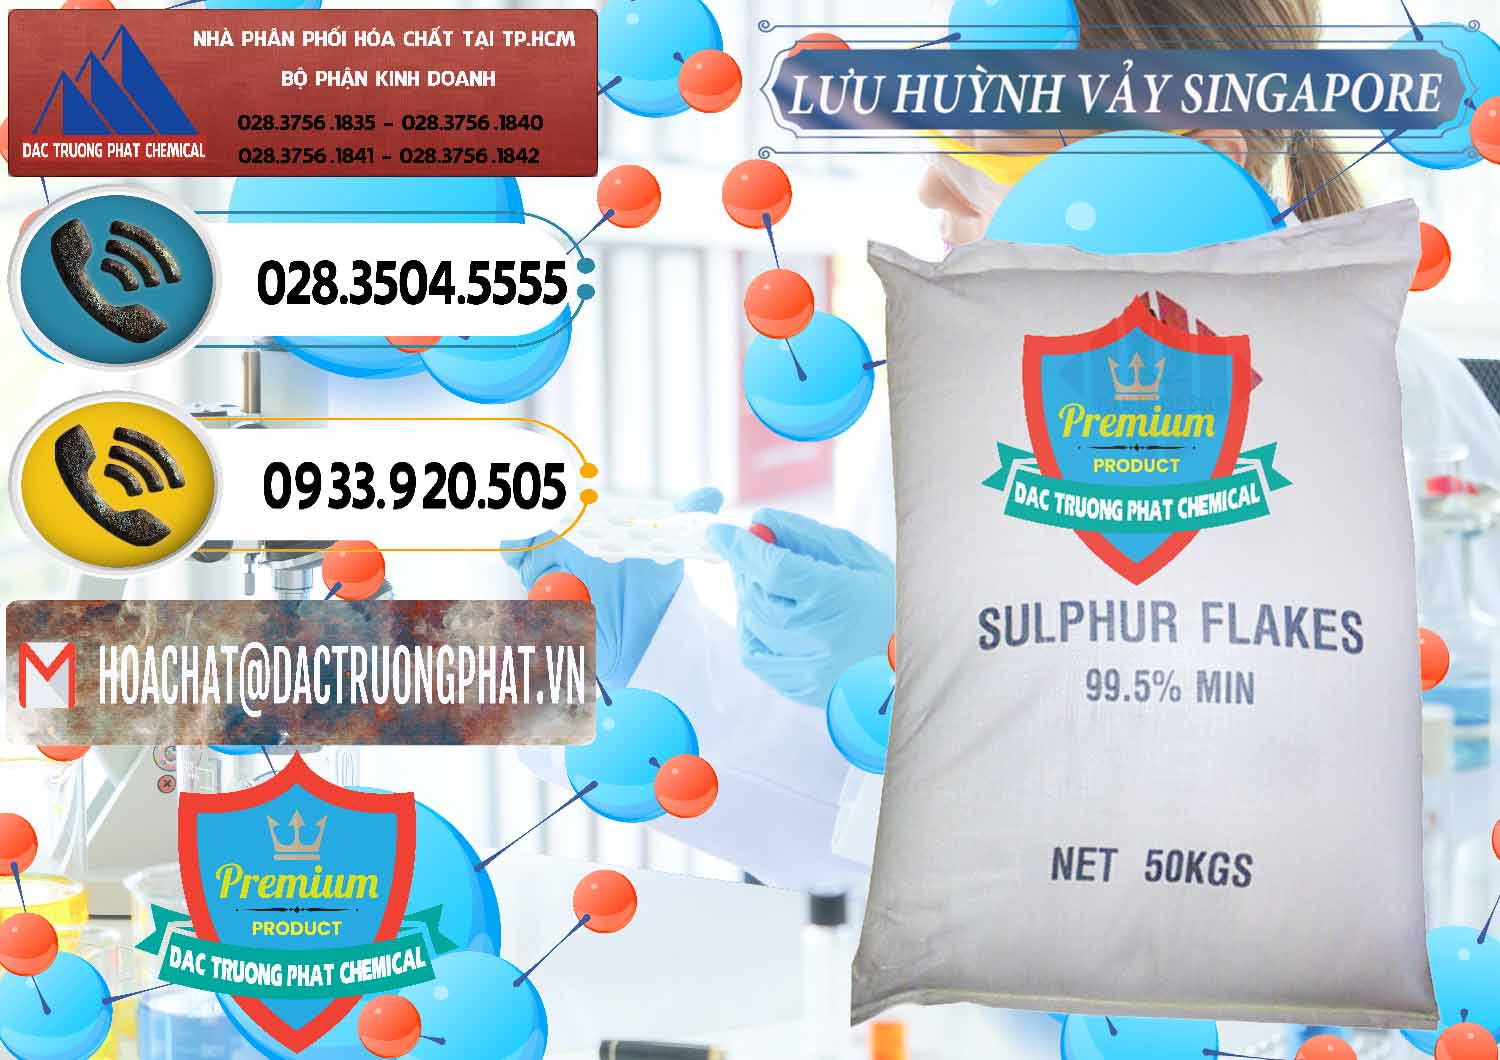 Cty cung cấp ( bán ) Lưu huỳnh Vảy - Sulfur Flakes Singapore - 0346 - Nhà cung ứng ( phân phối ) hóa chất tại TP.HCM - hoachatdetnhuom.vn